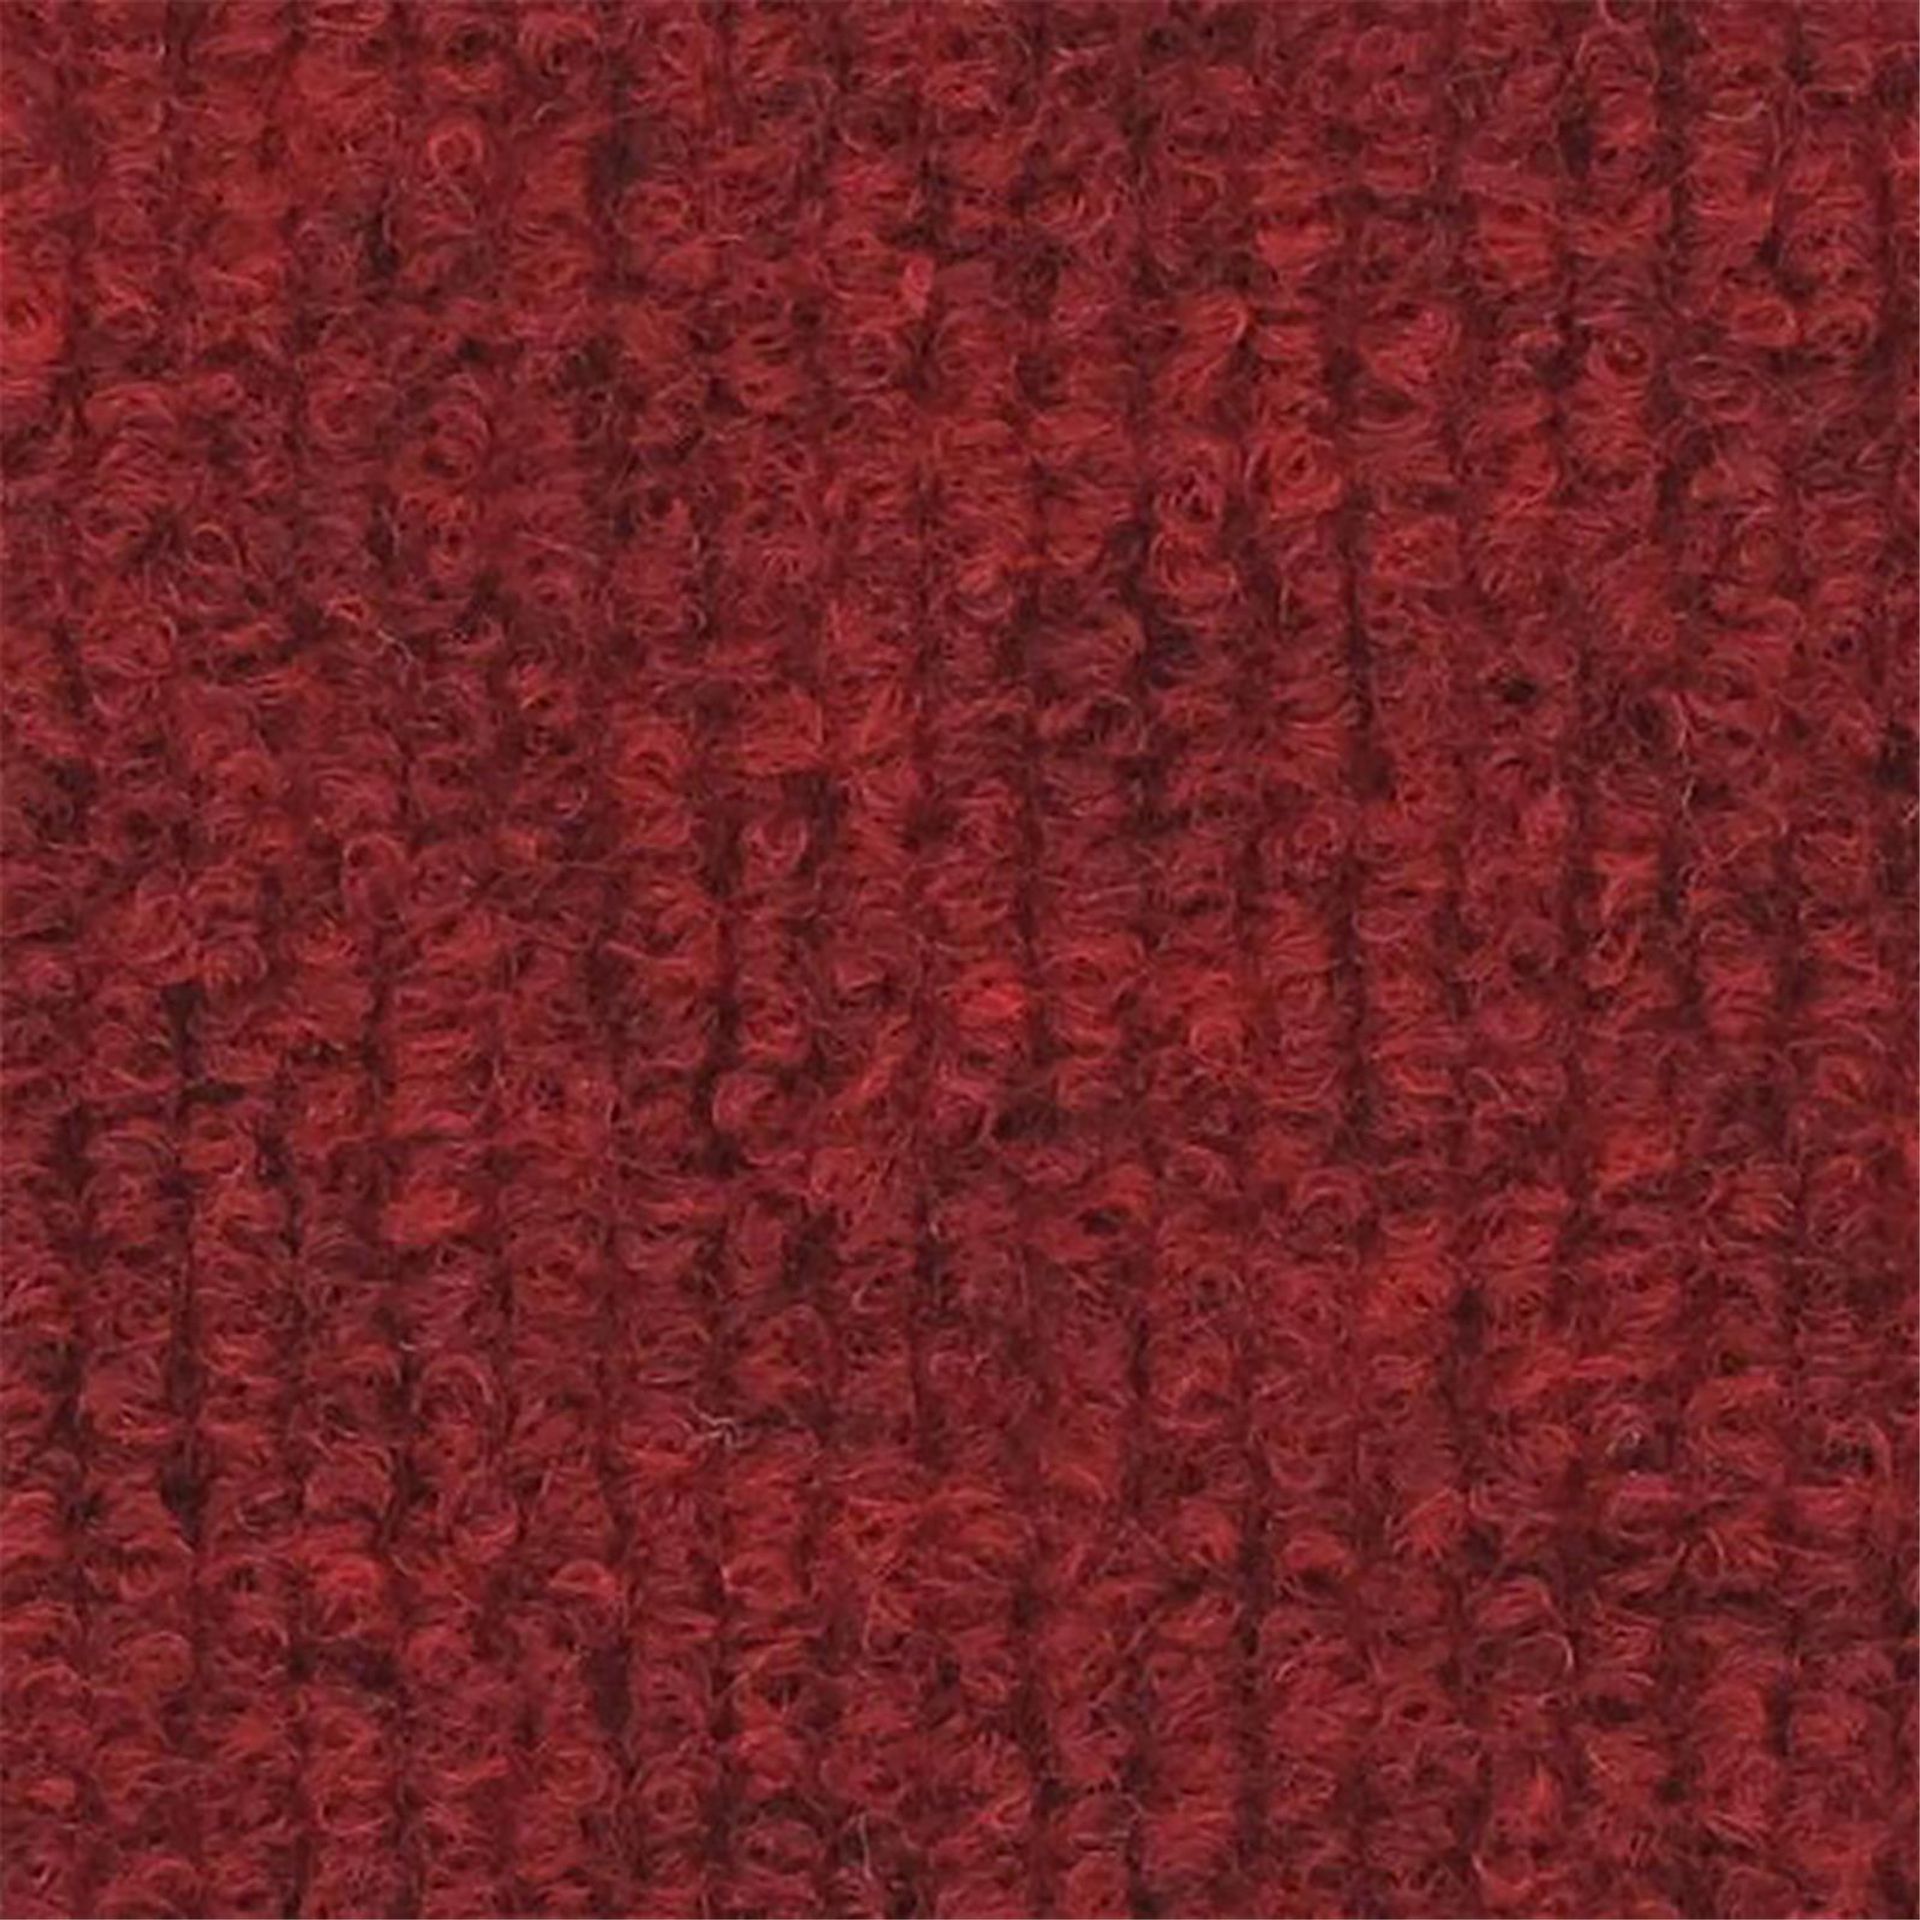 Messeboden Rips-Nadelvlies EXPOLINE Dark Red 0012 100qm ohne Schutzfolie - Rollenbreite 200 cm